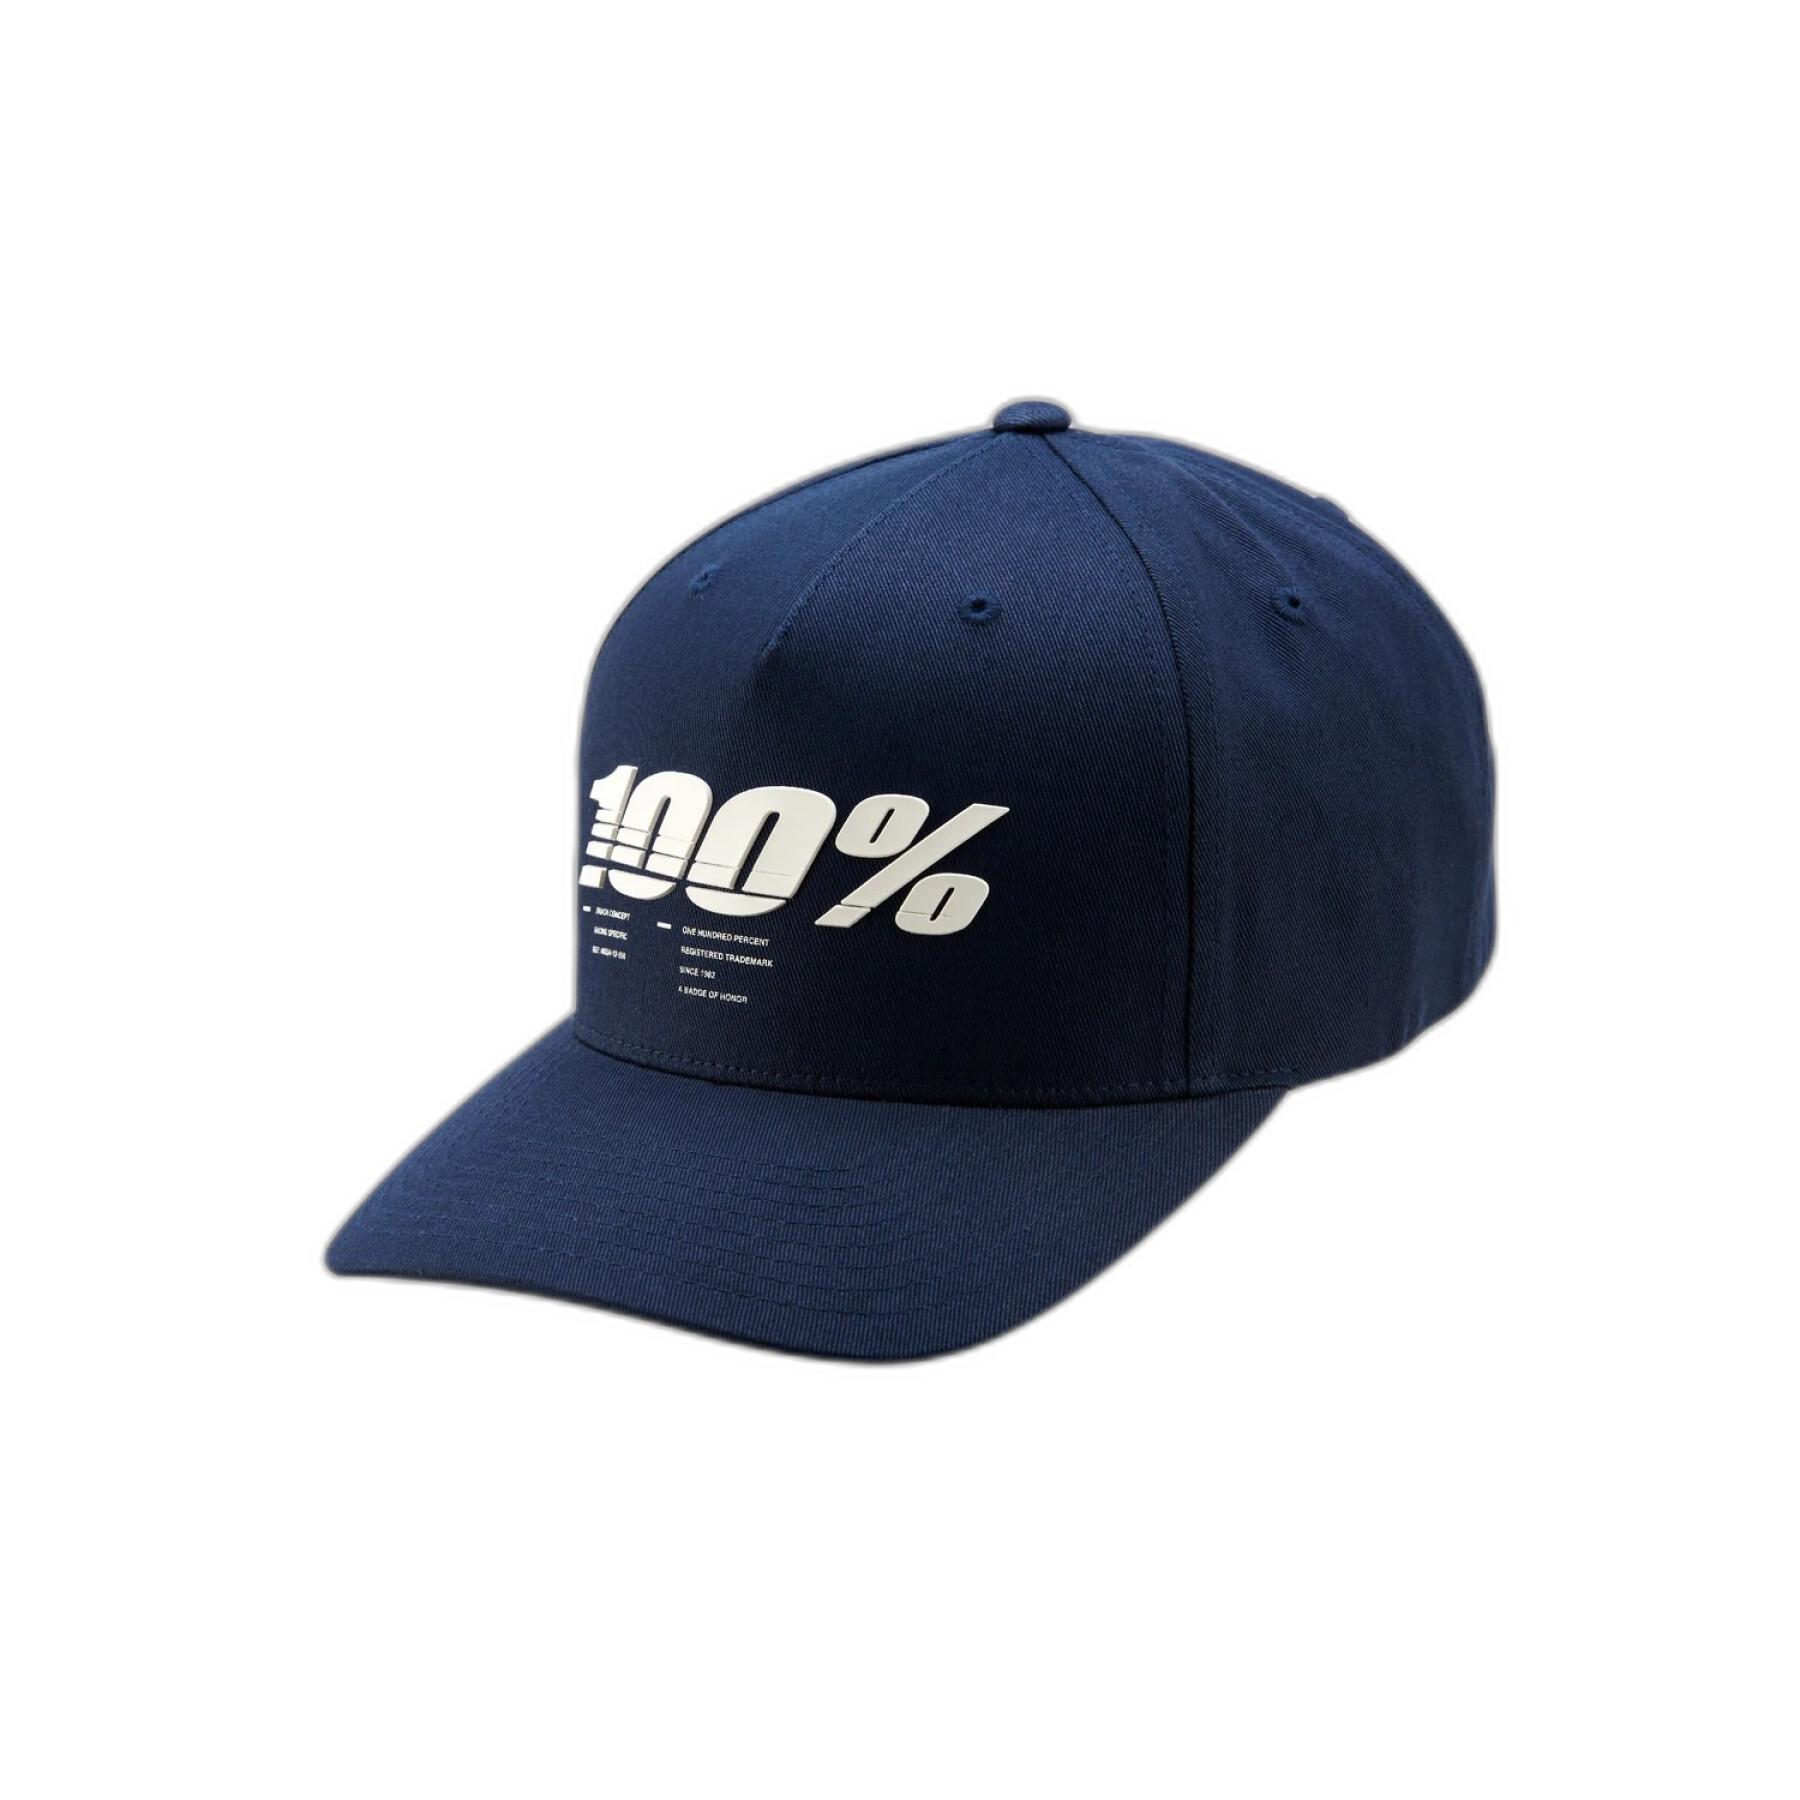 Mütze 100% staunch snapback x-fit